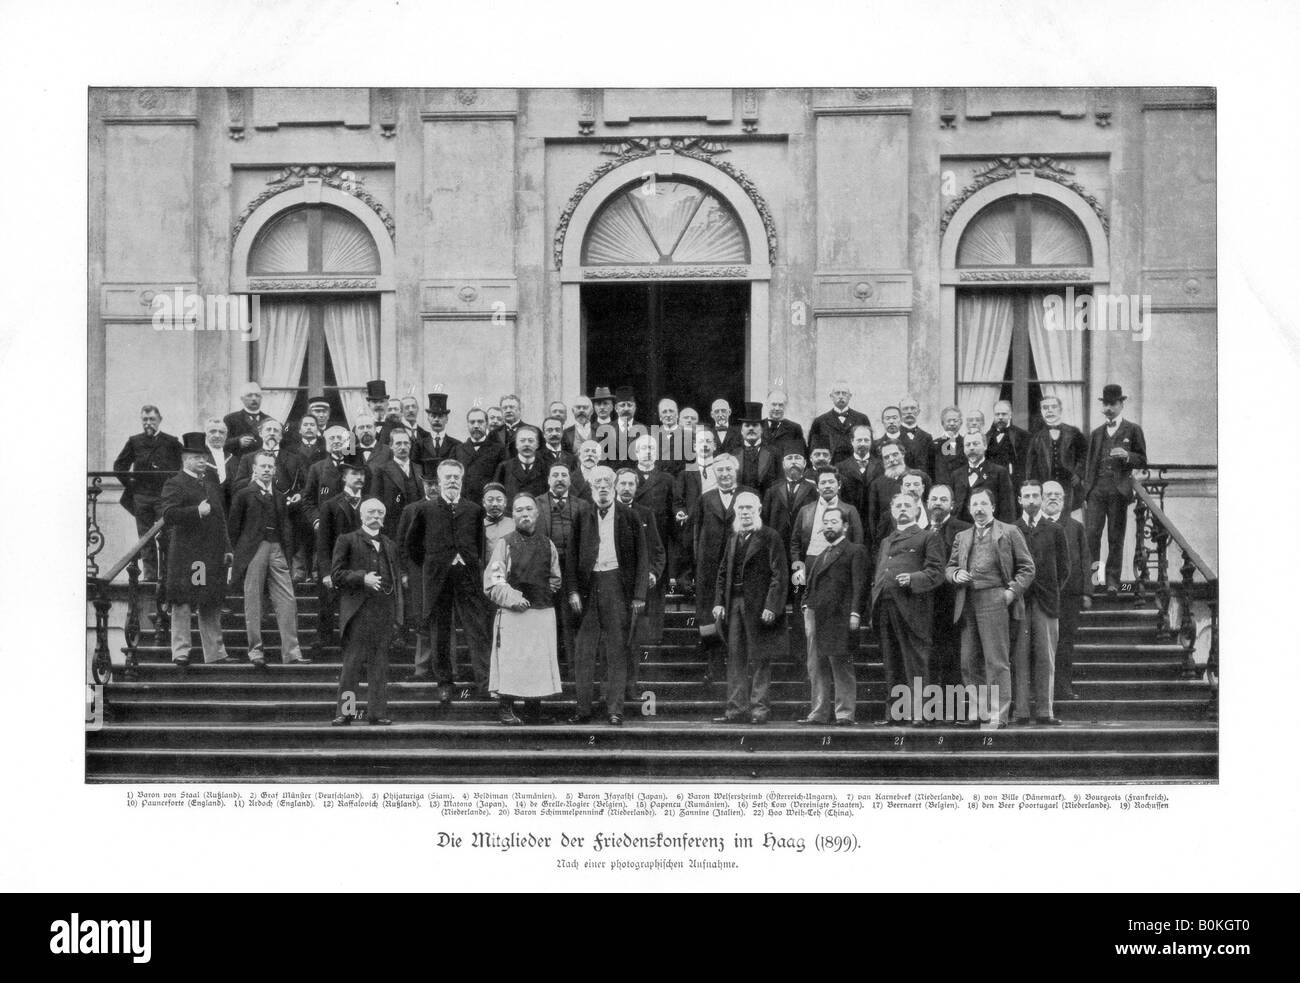 Международная конференция в гааге. Мирная конференция в Гааге 1899. Гаагские мирные конференции 1899 и 1907.